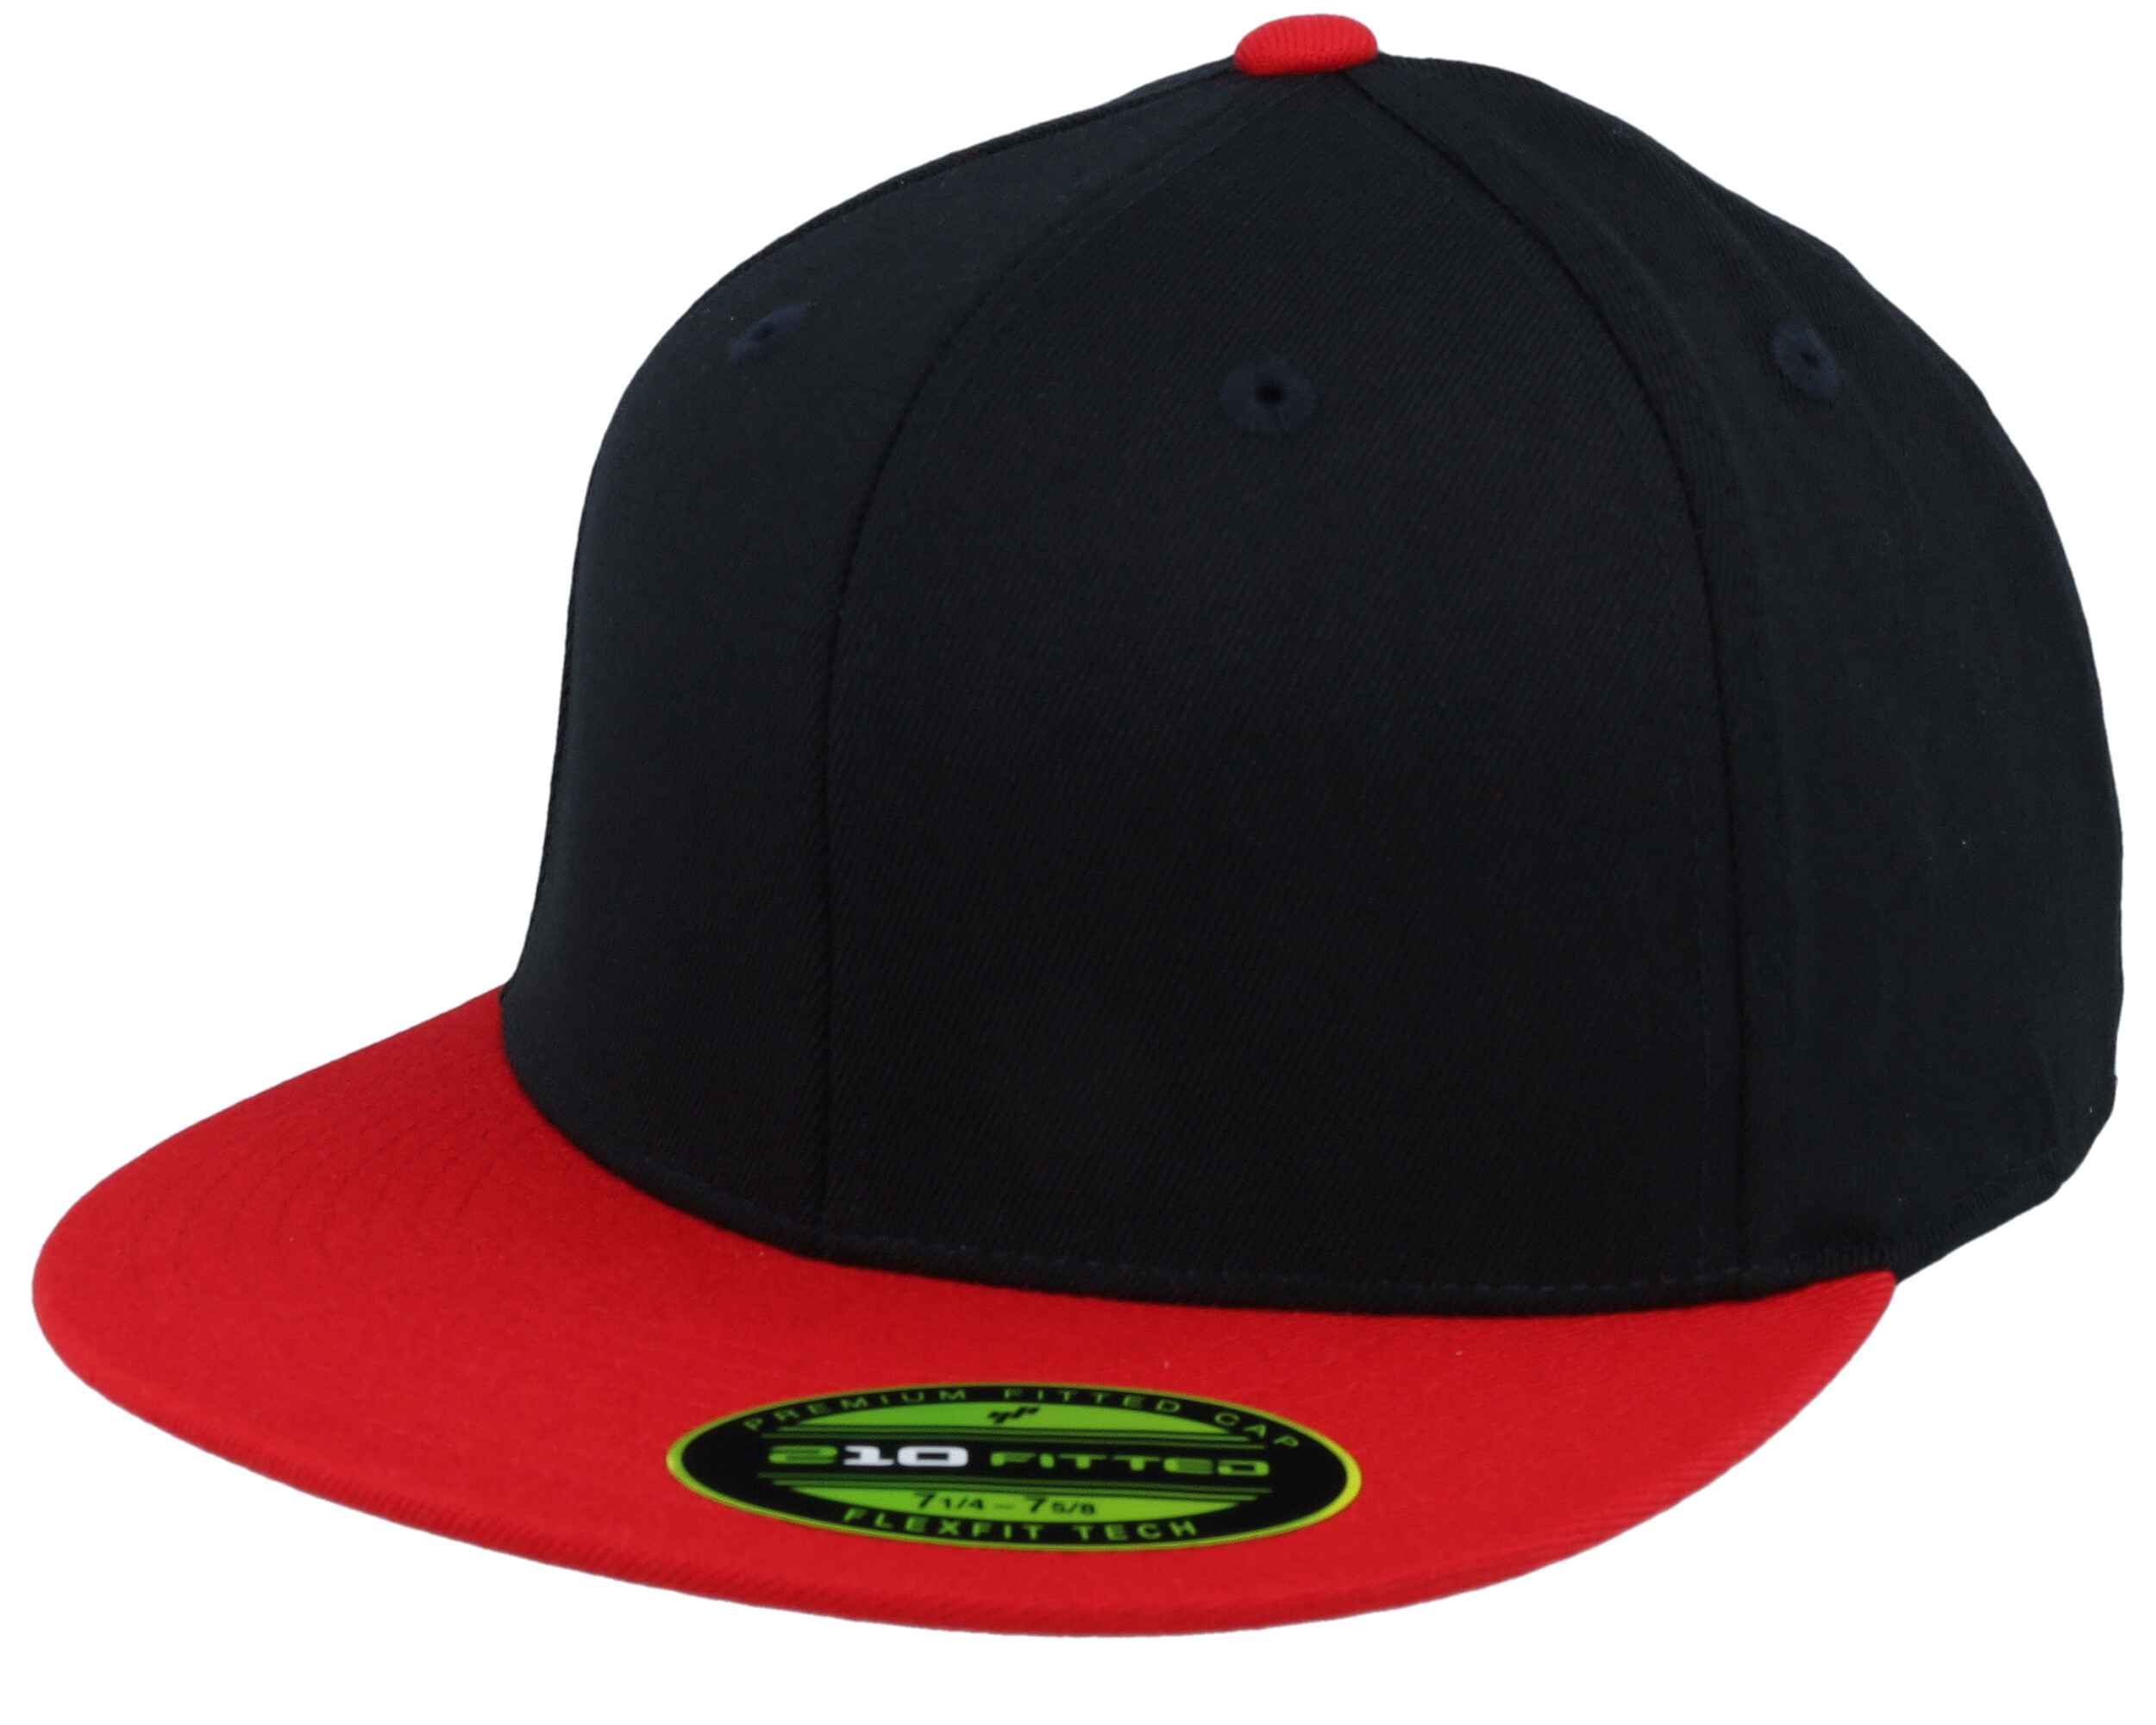 Premium 210 2-Tone Black/Red Fitted - Flexfit cap